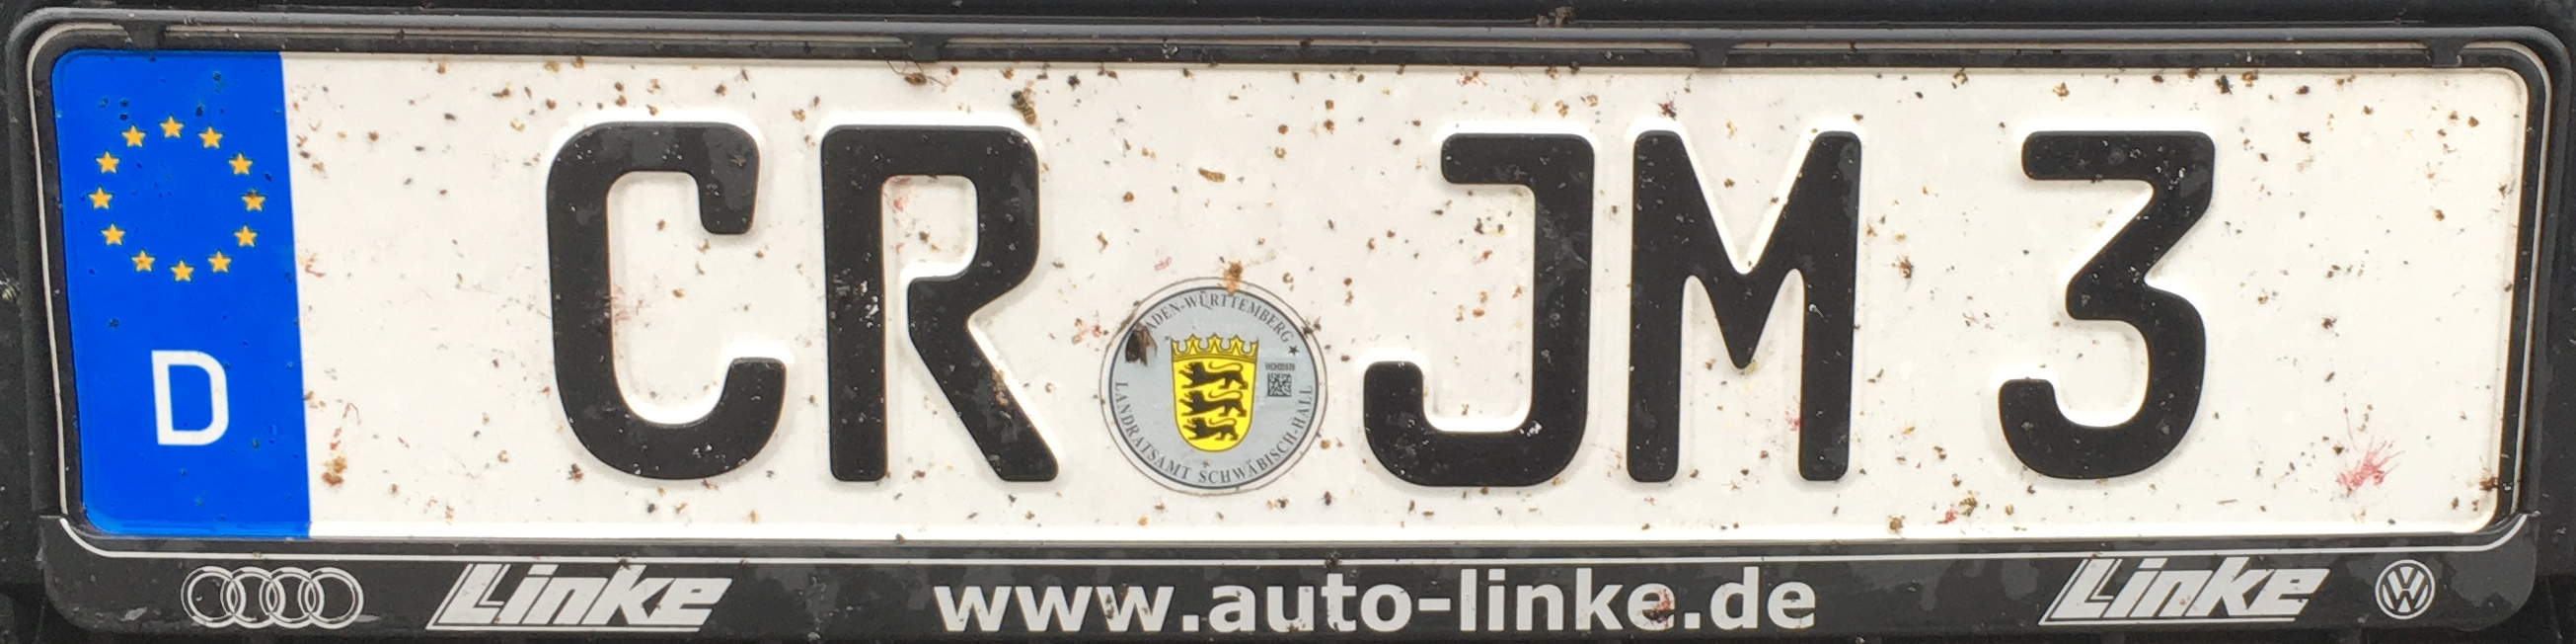 Registrační značky Německo - CR - Crailsheim, foto: podalnici.cz